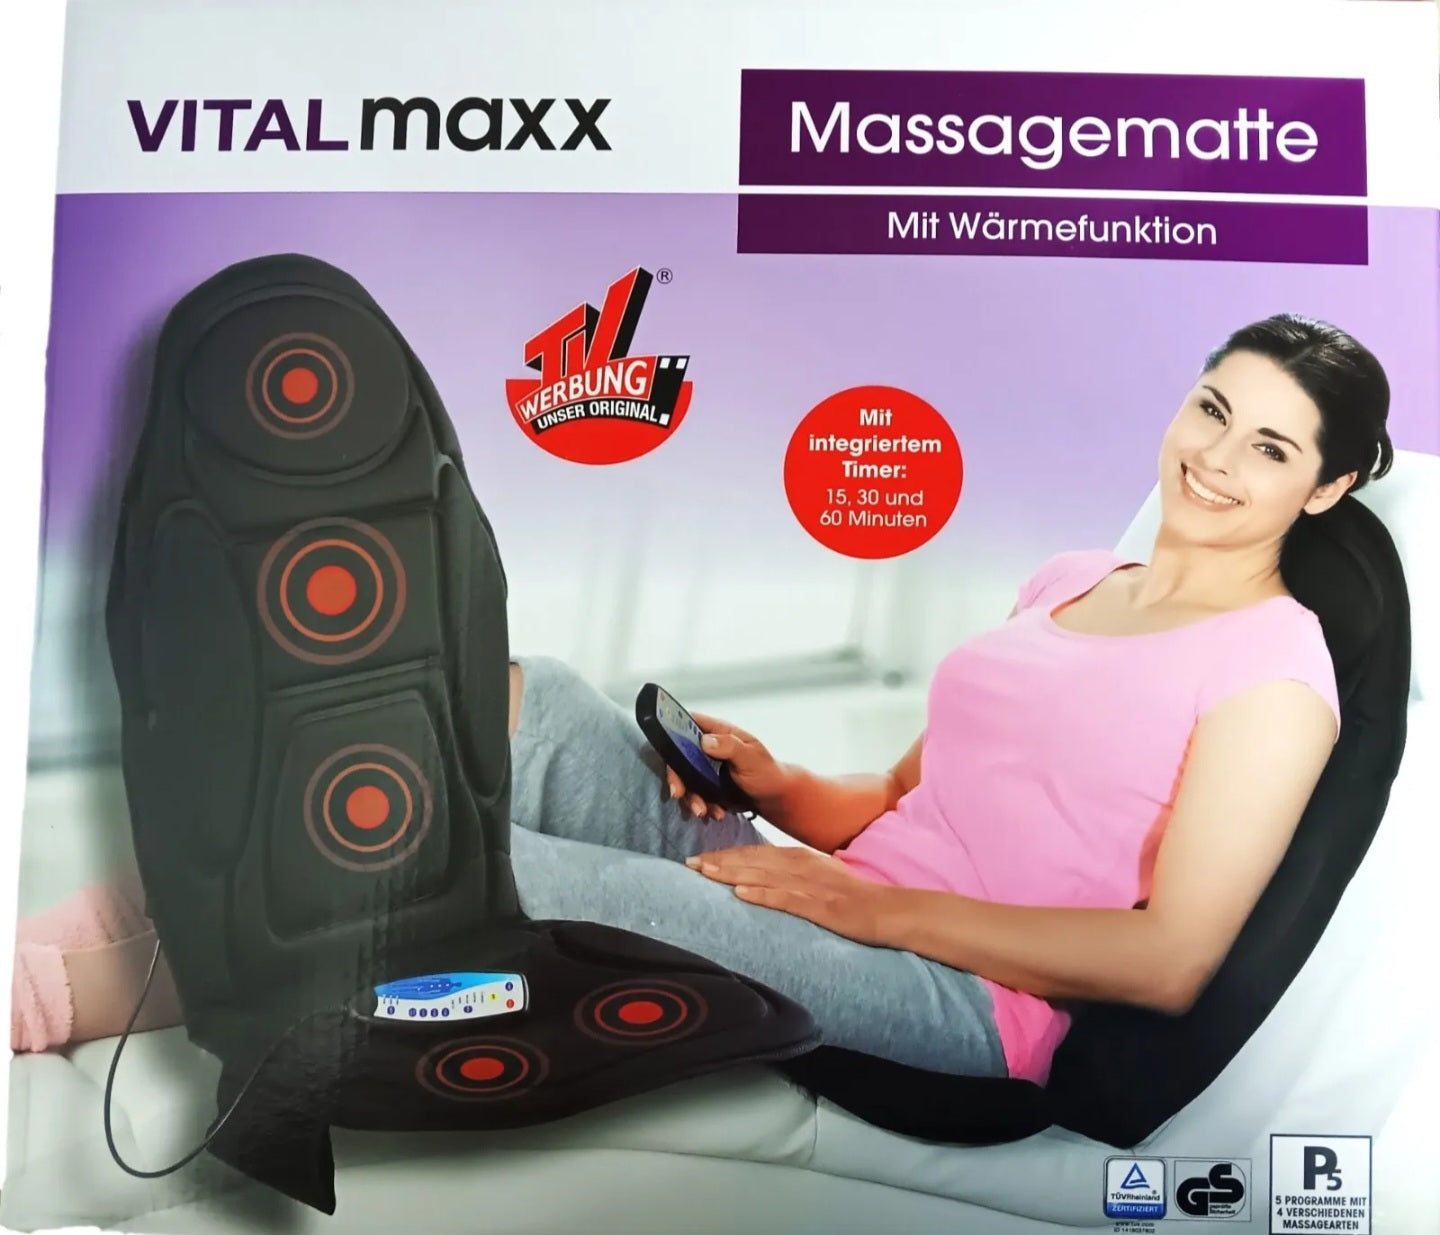 VITALmaxx Massagematte